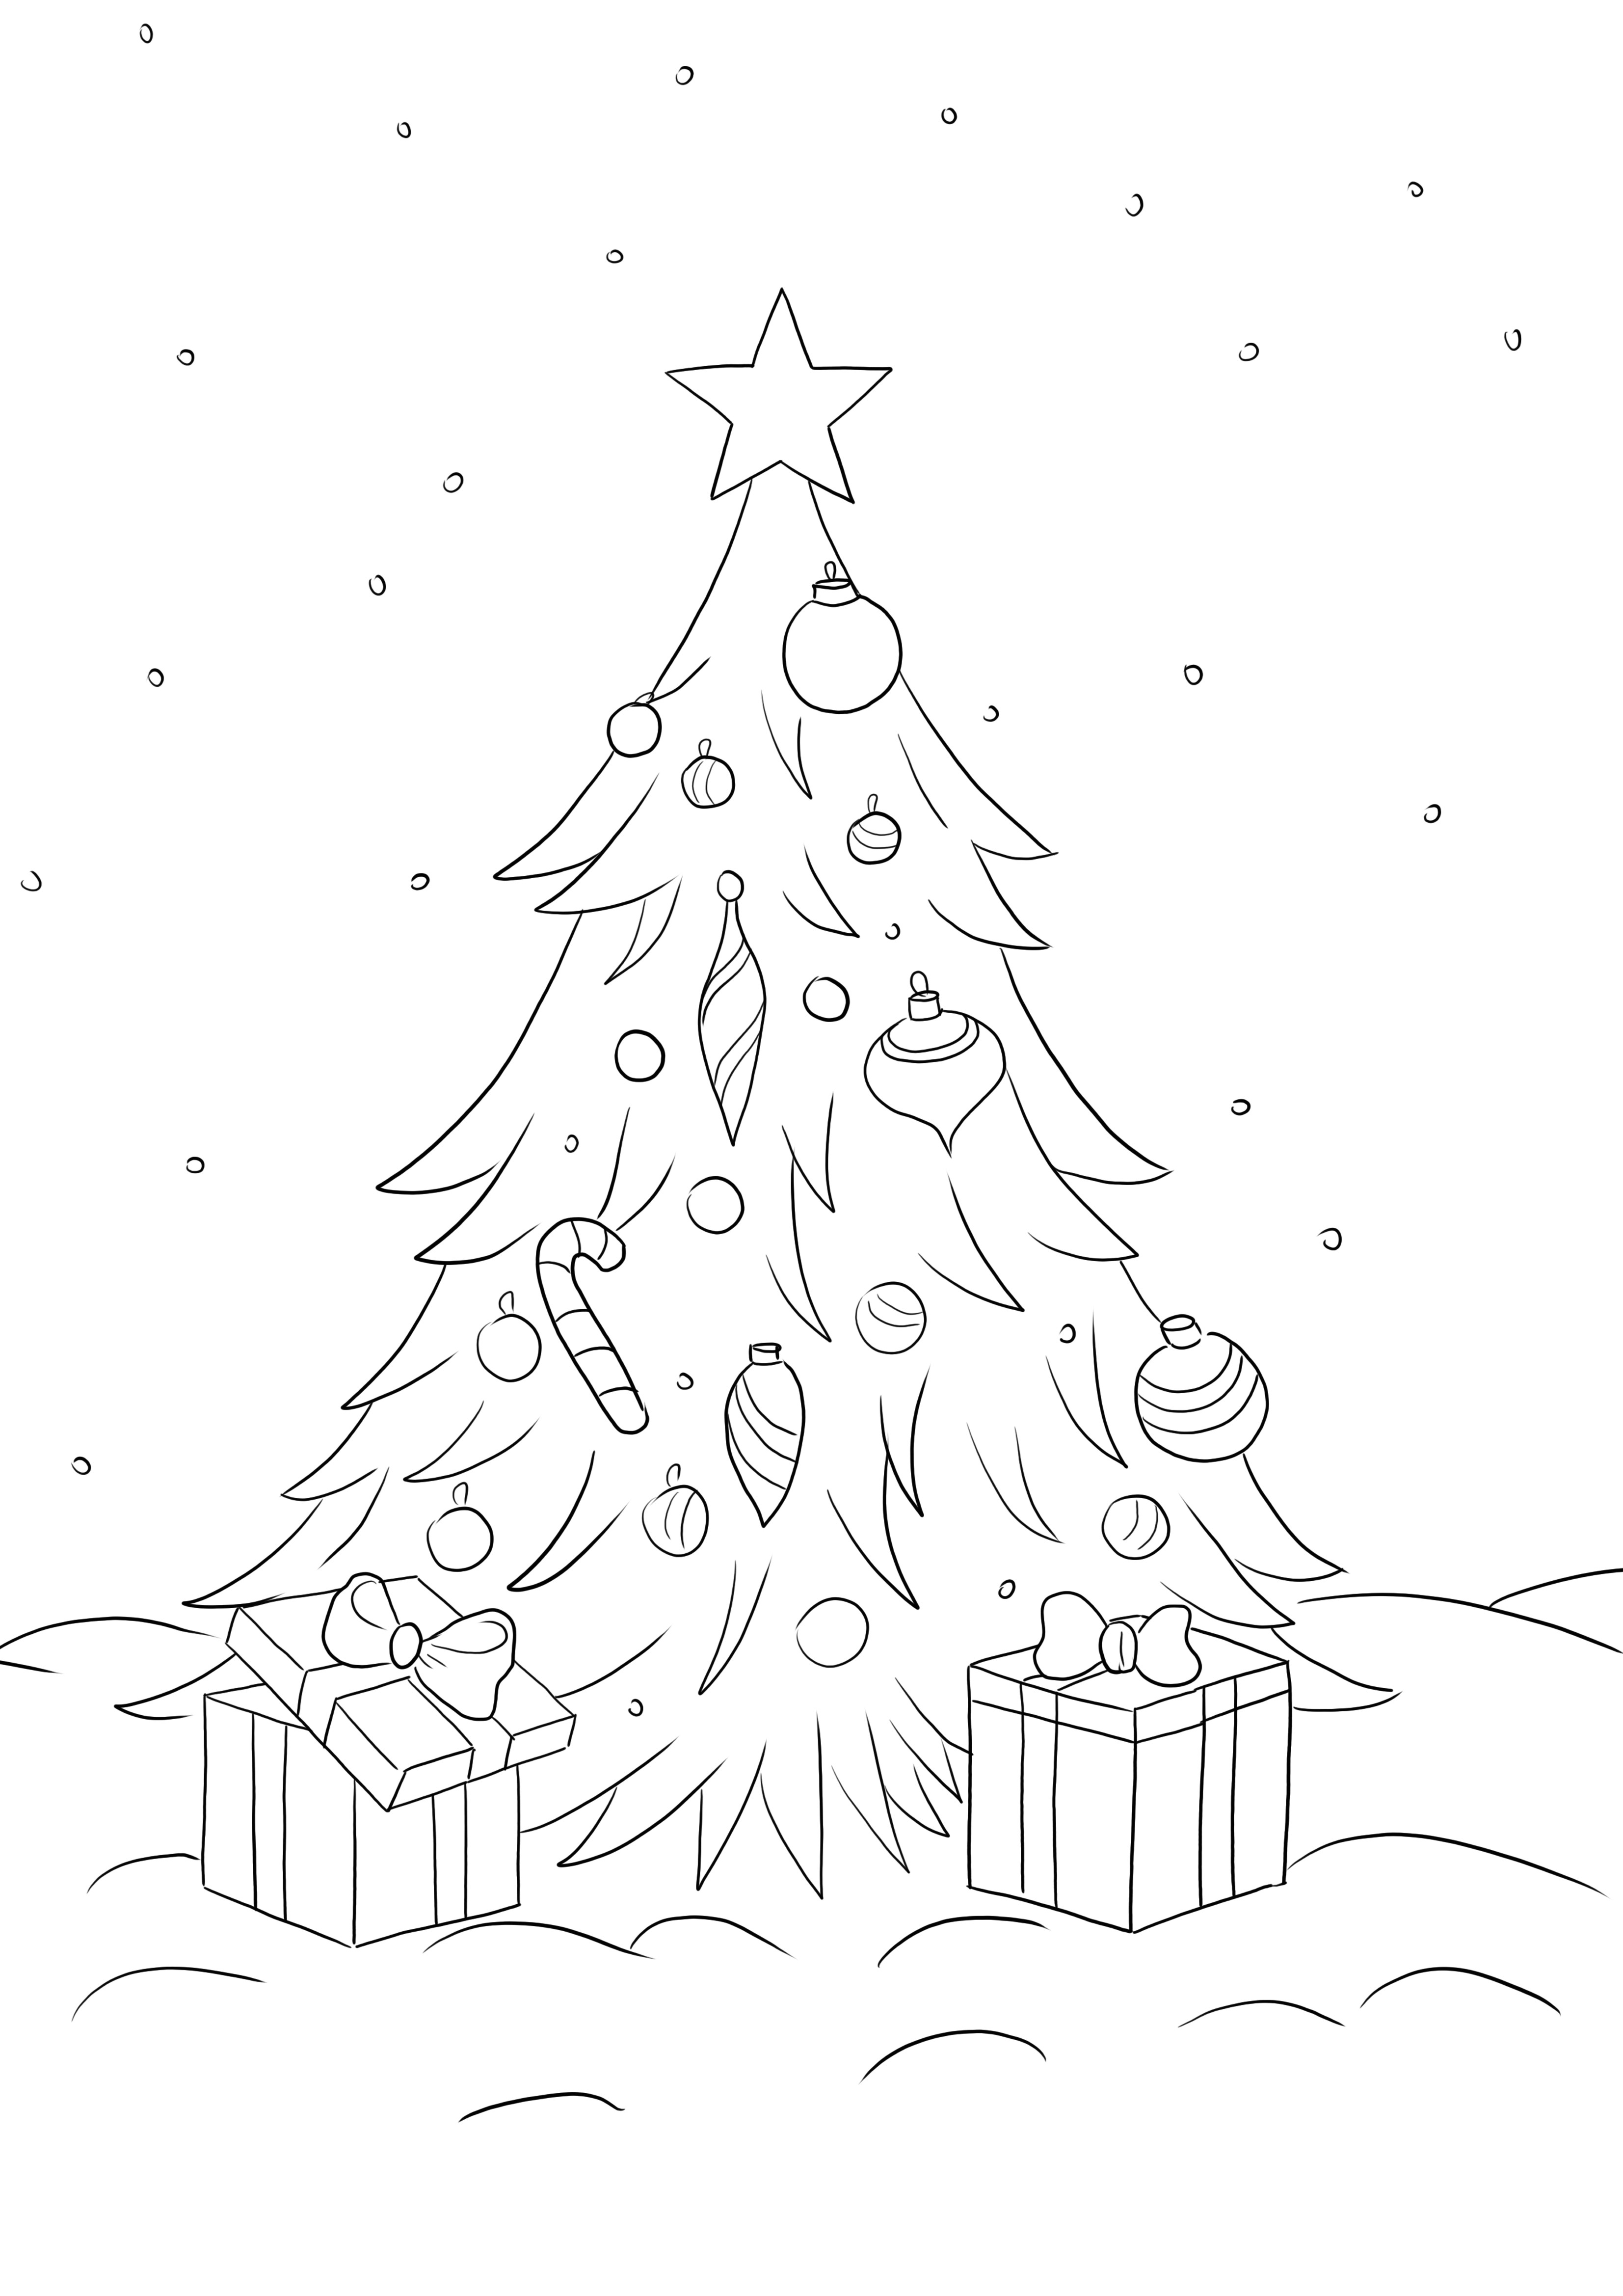 Weihnachtsbaum mit Geschenken kann kostenlos heruntergeladen und gefärbt werden